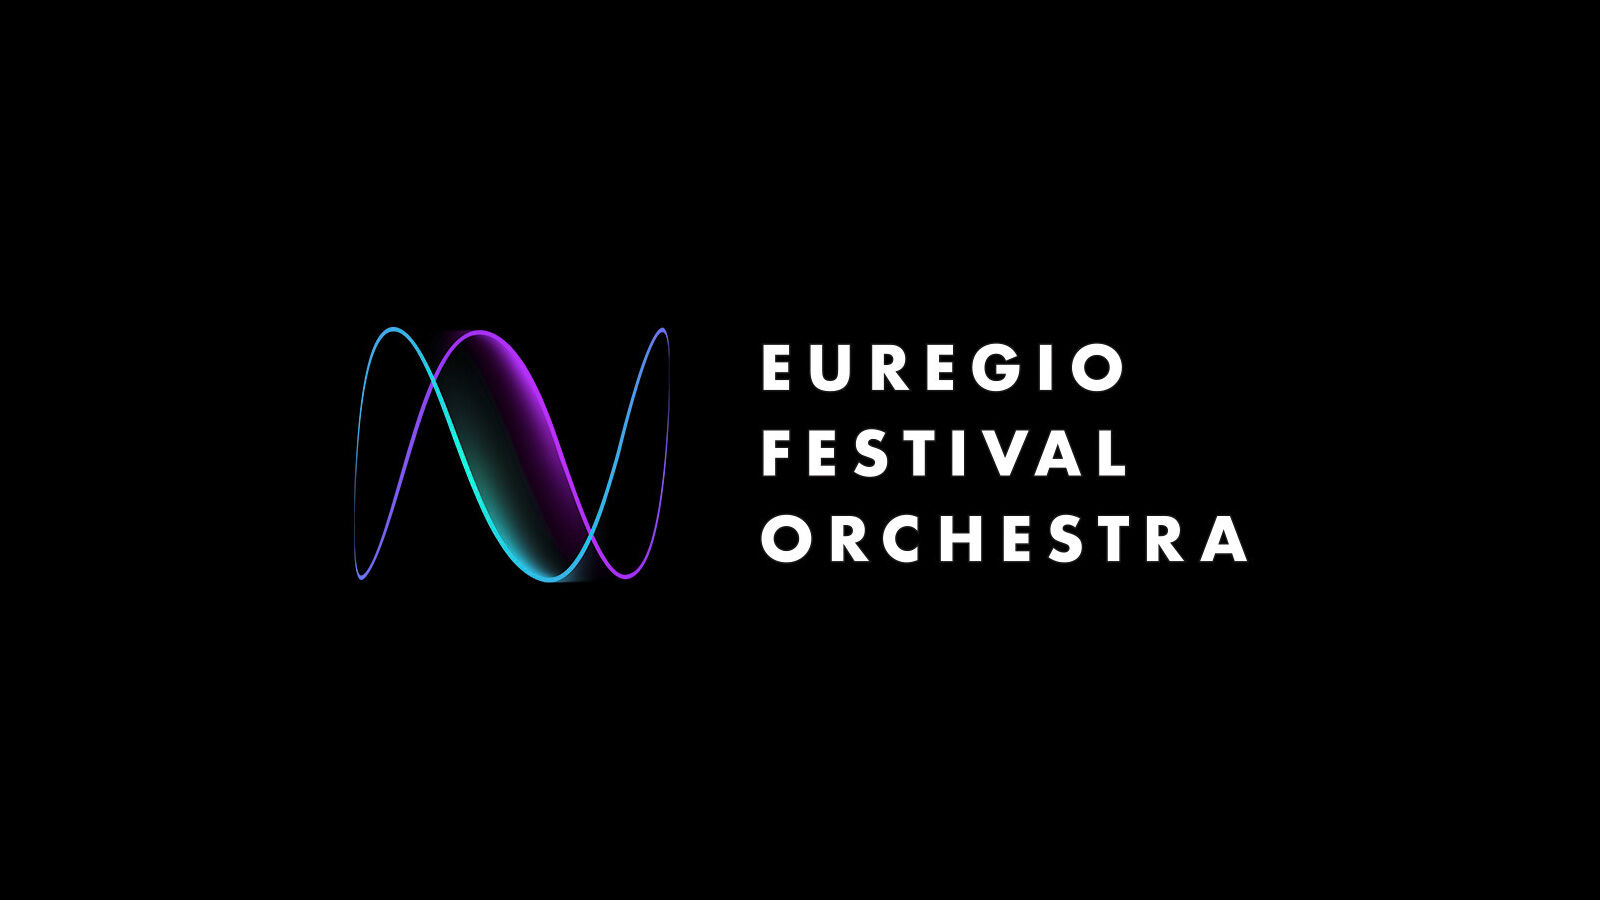 Corporate design for the Euregio Festival Orchestra